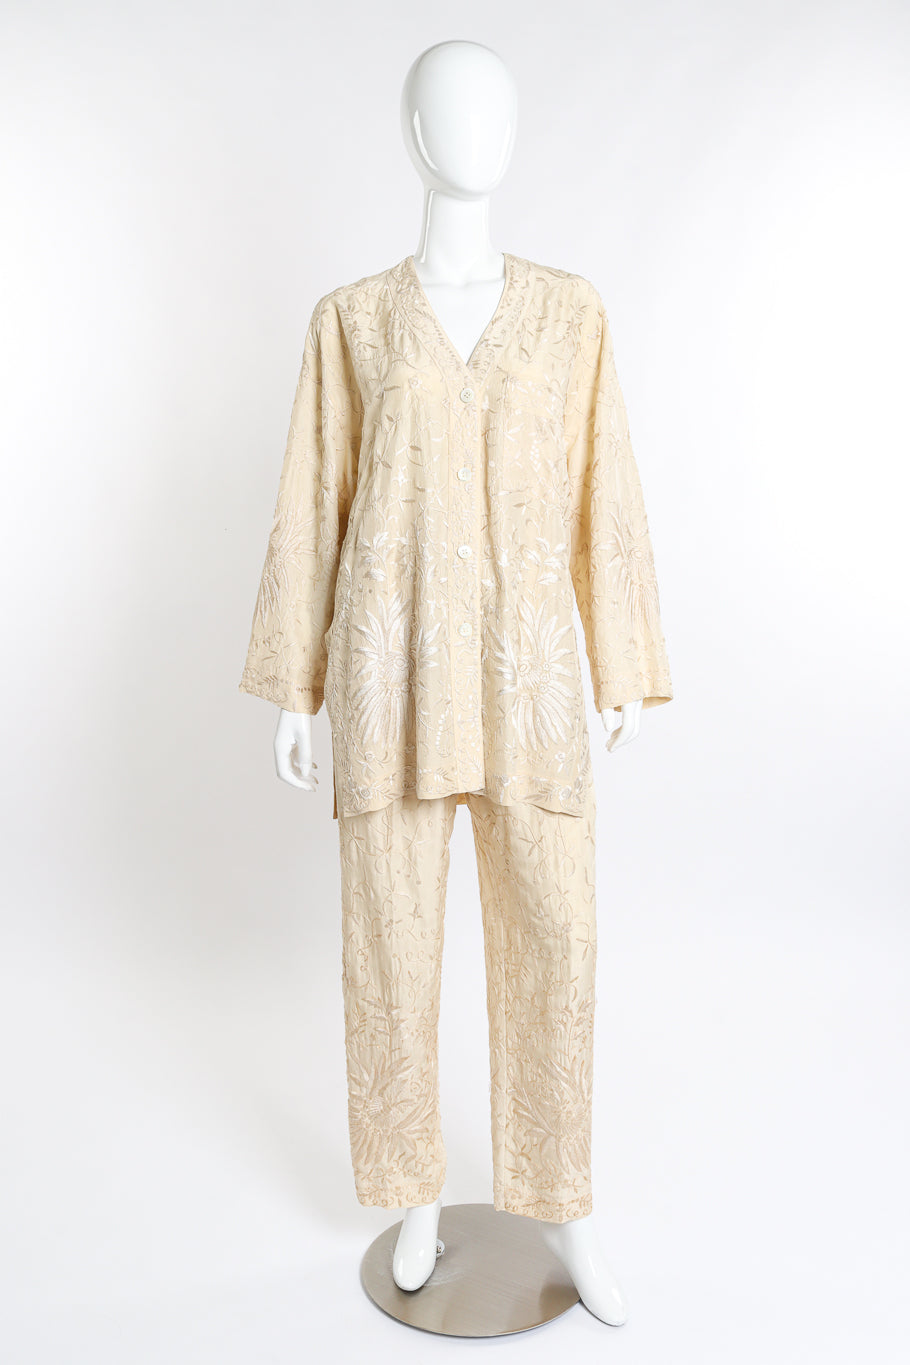 Vintage Donna Karan Embroidered Top & Pant Set front on mannequin @recess la